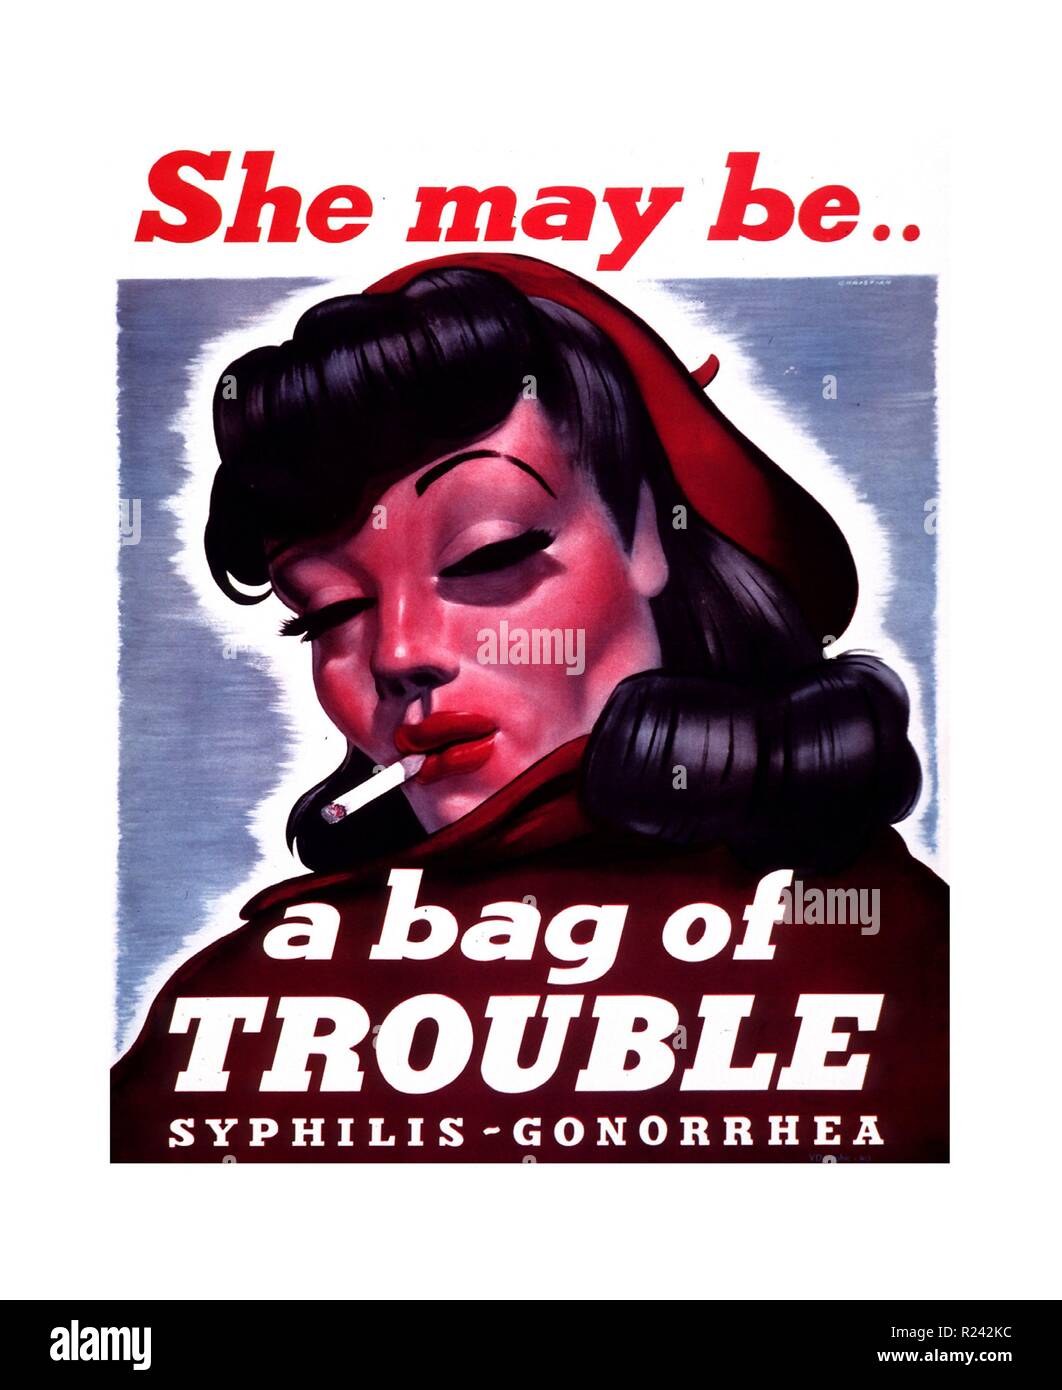 Ella puede ser... Una bolsa de problemas de salud pública americana 1940 póster para sensibilizar las enfermedades venéreas Foto de stock